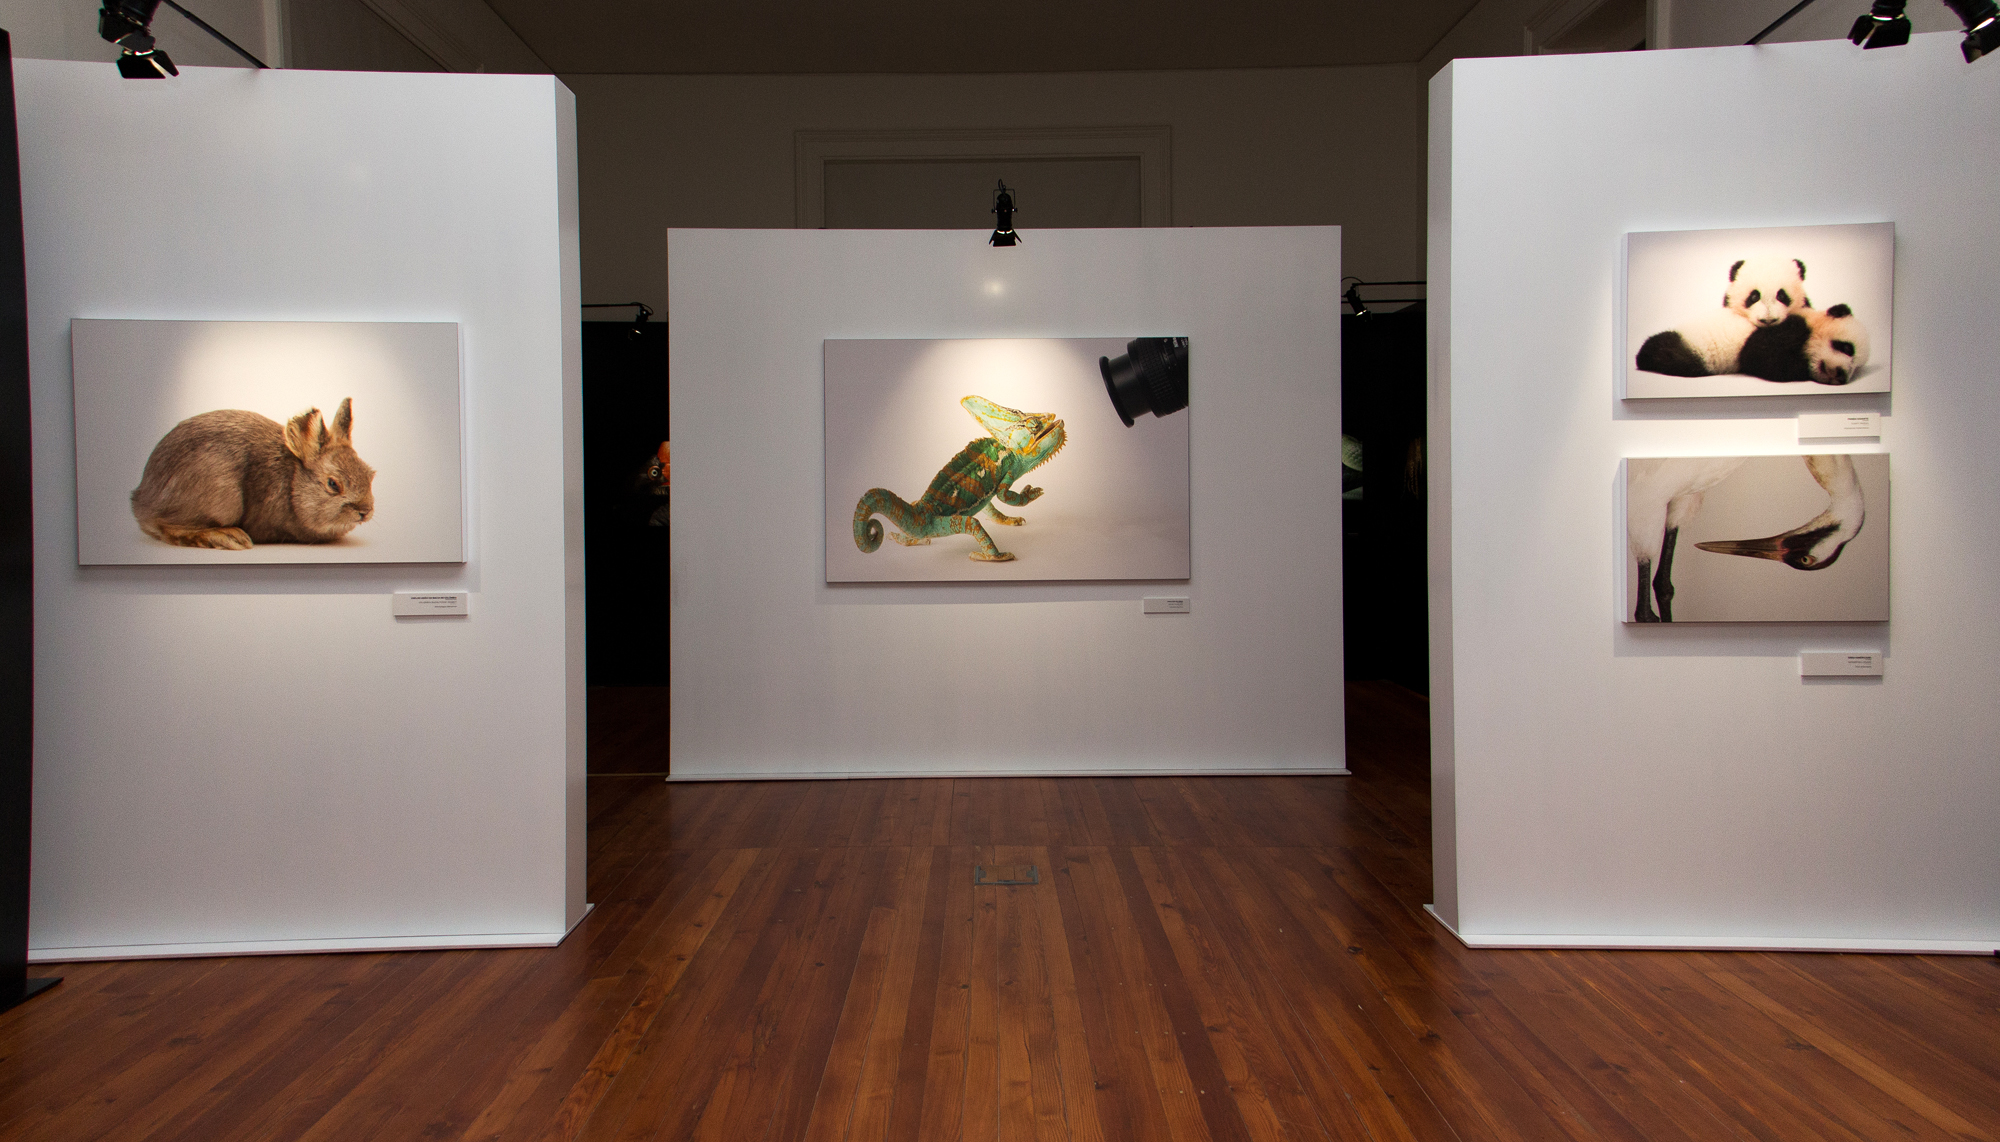 Exemplos de retratos da mostra "Photo Ark" até abril na Galeria da Biodiversidade.